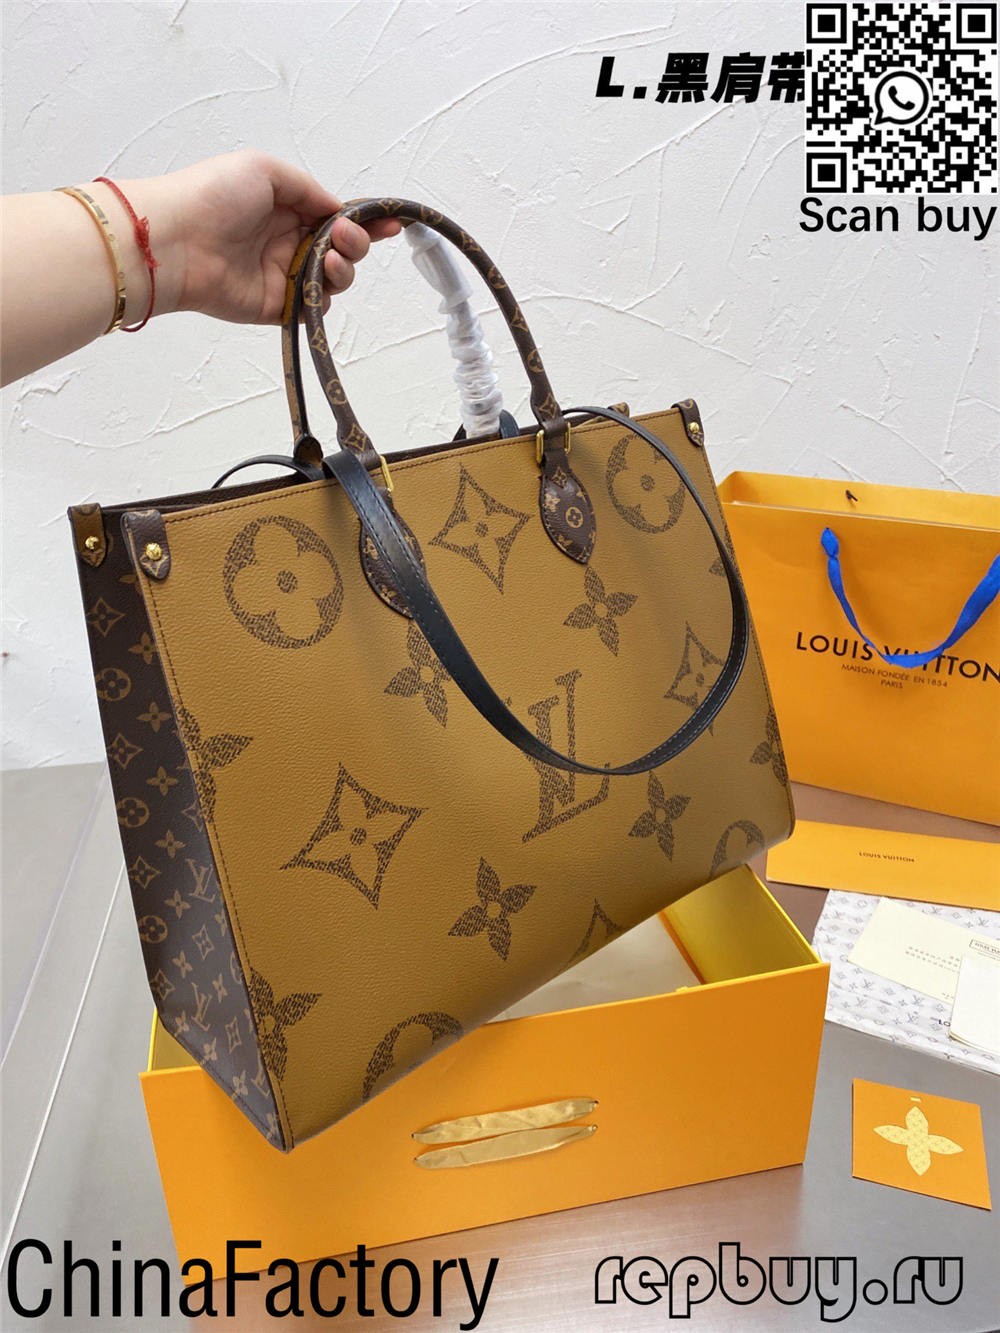 Les 12 meilleures répliques de sacs Louis Vuitton de qualité à acheter (mise à jour 2022)